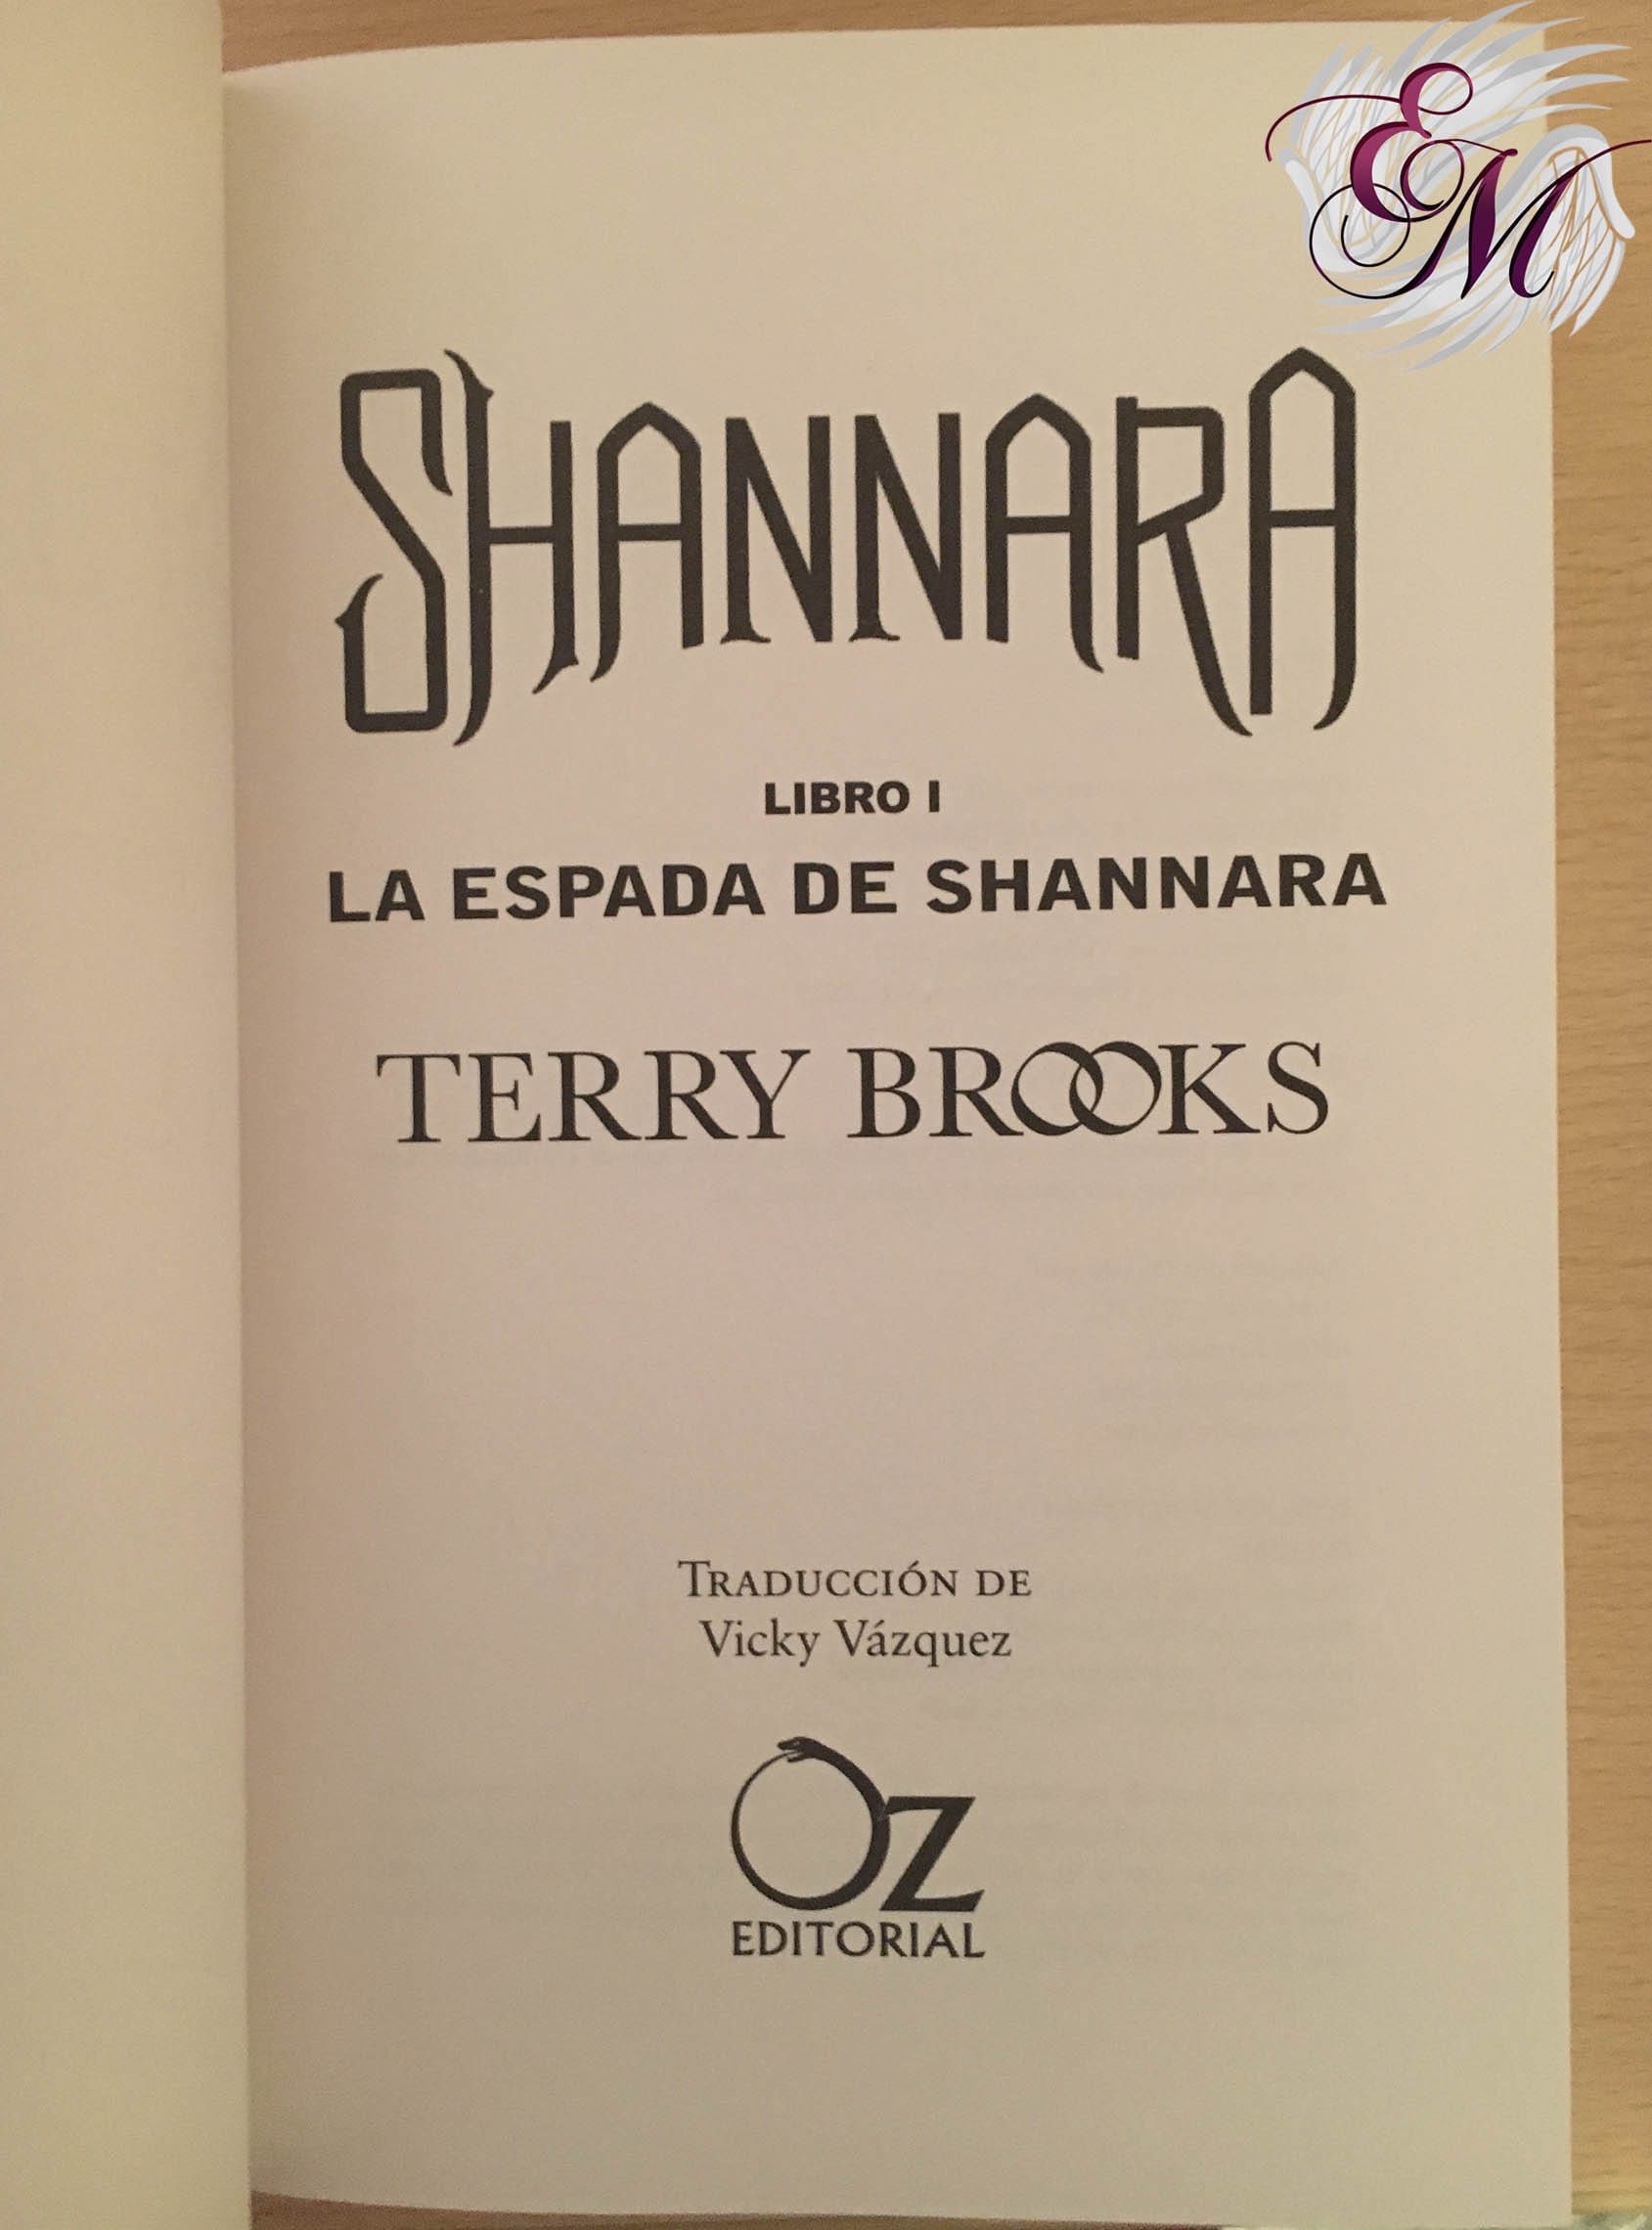 La espada de Shannara, de Terry Brooks - Reseña